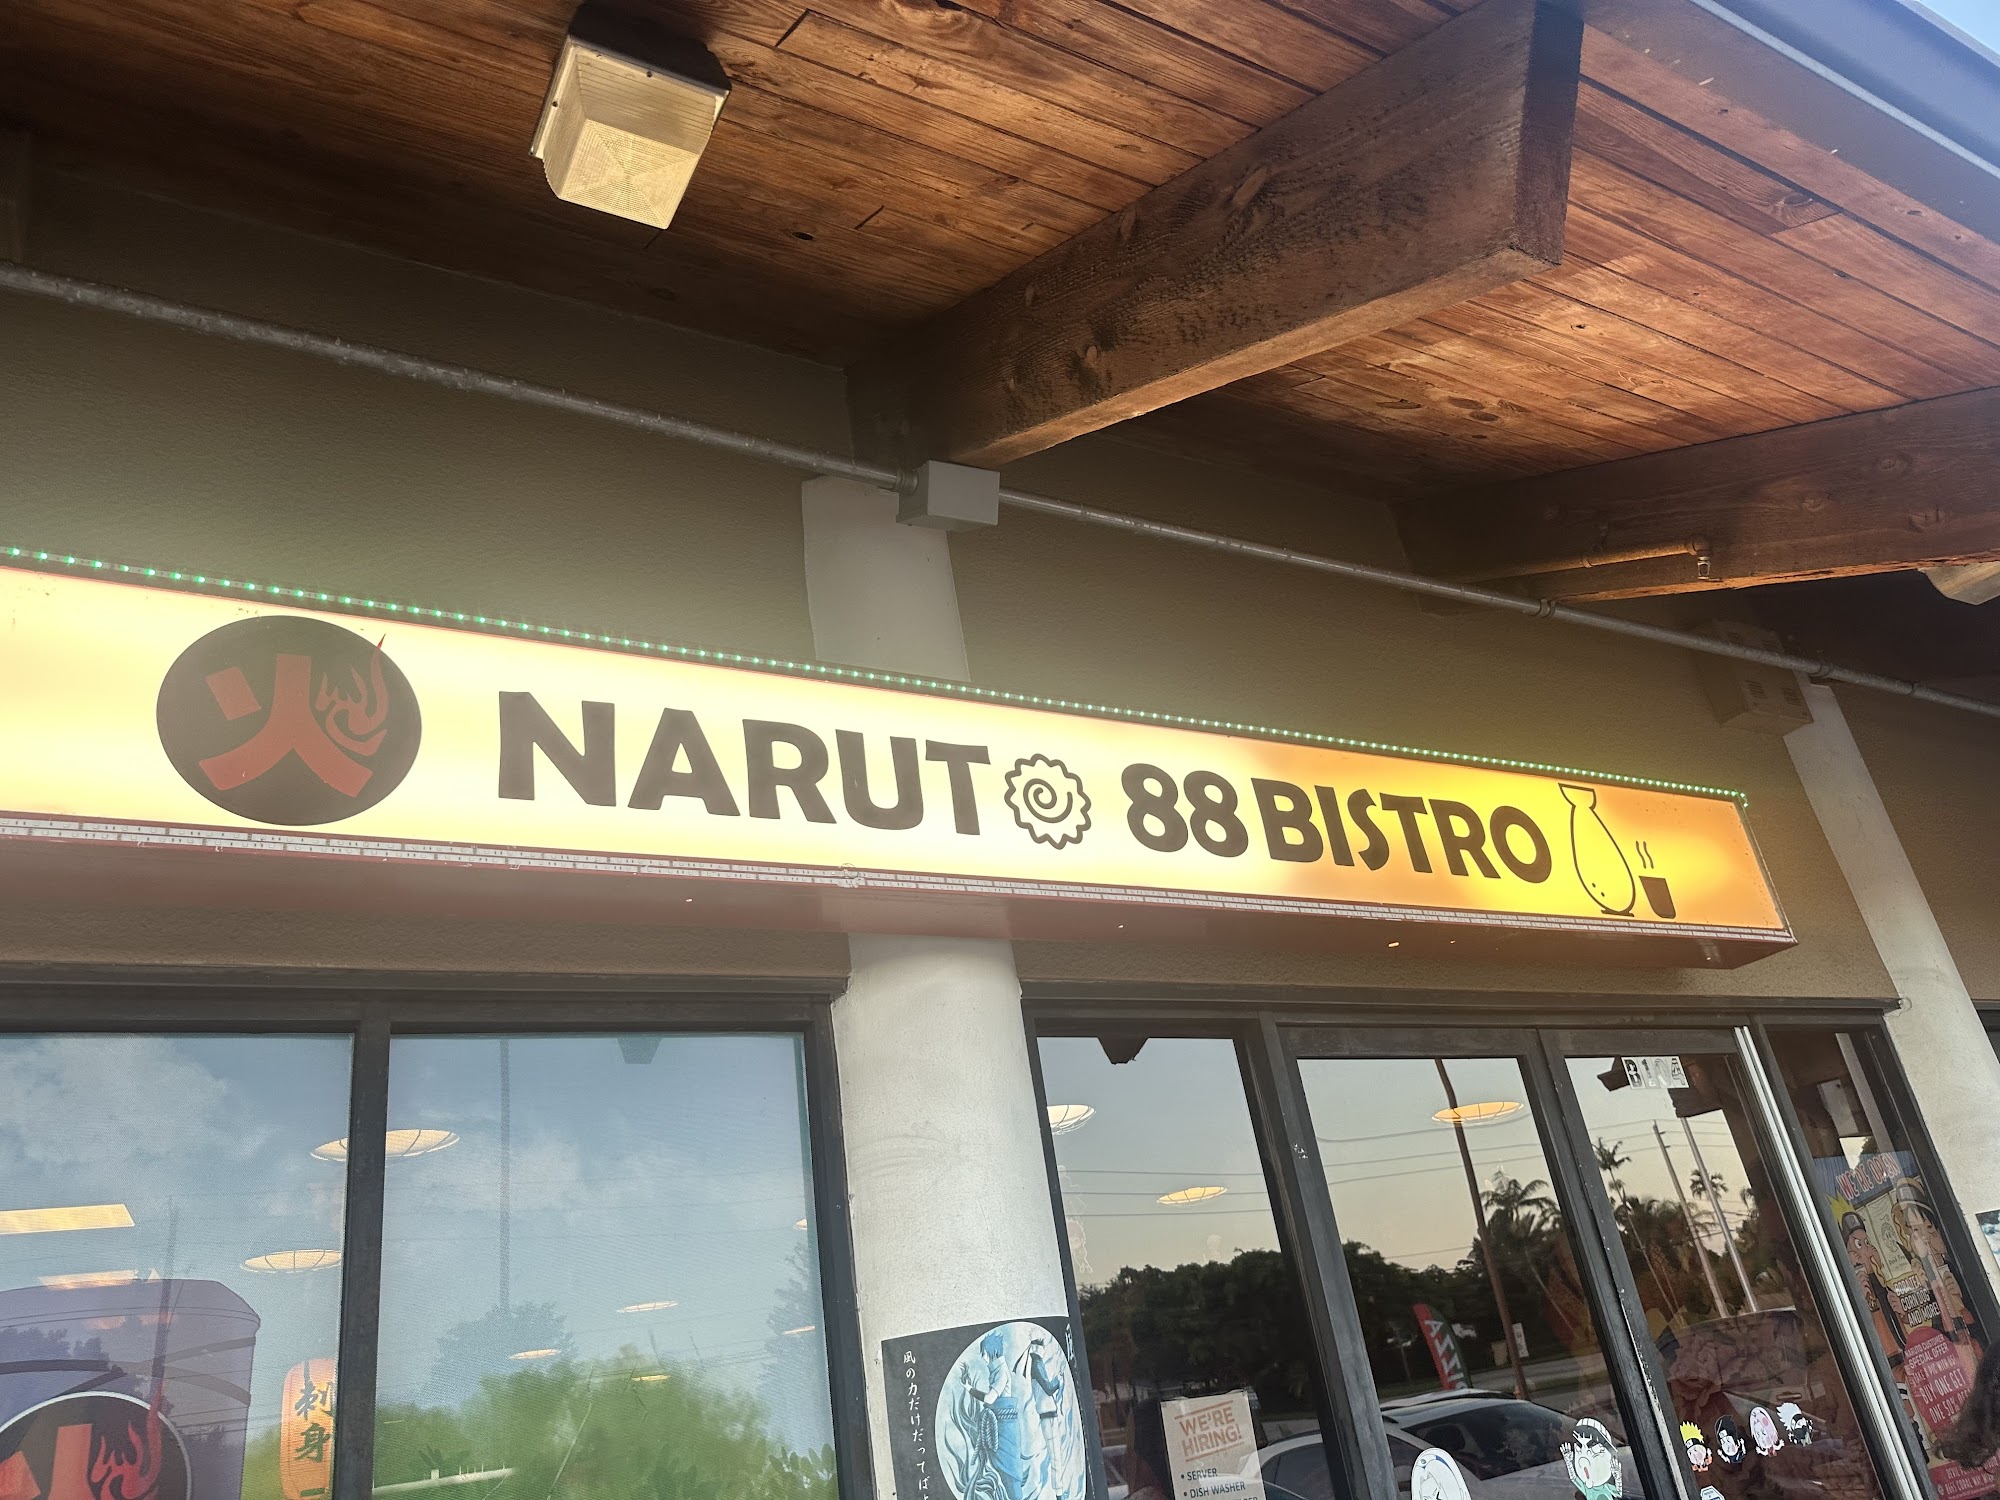 Naruto 88 bistro